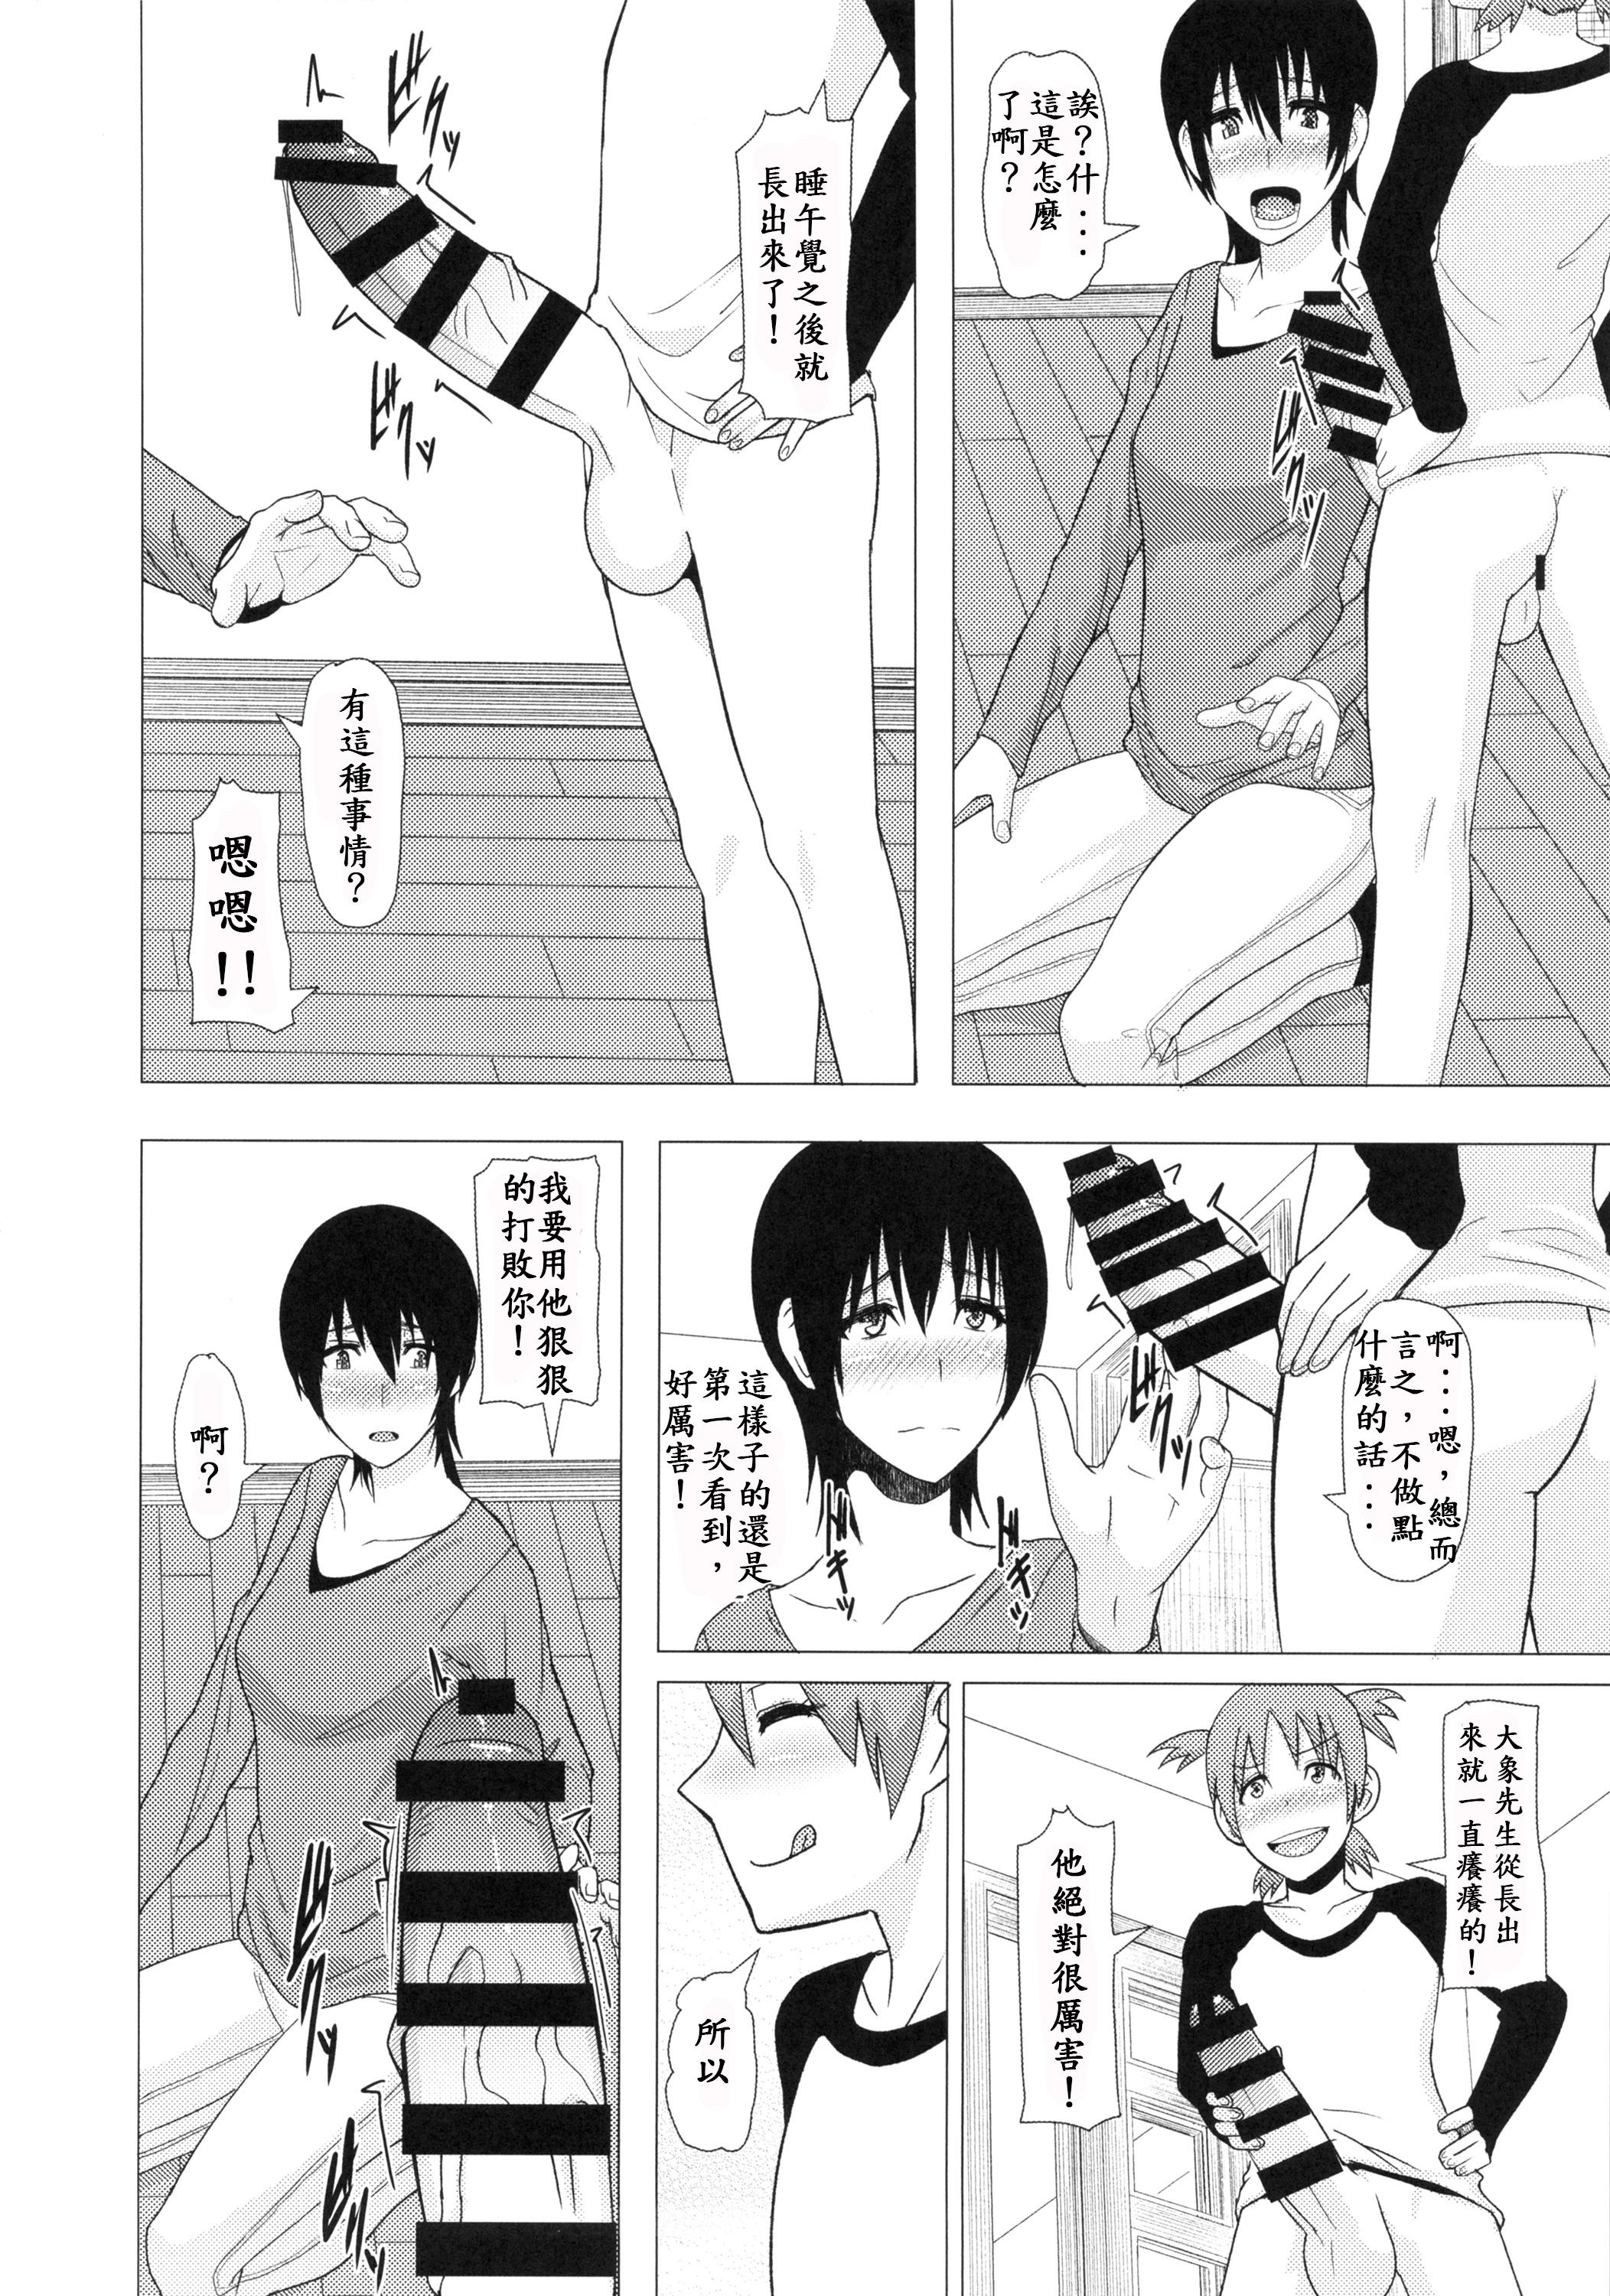 Humiliation REDLEVEL14 - Yotsubato Strapon - Page 4